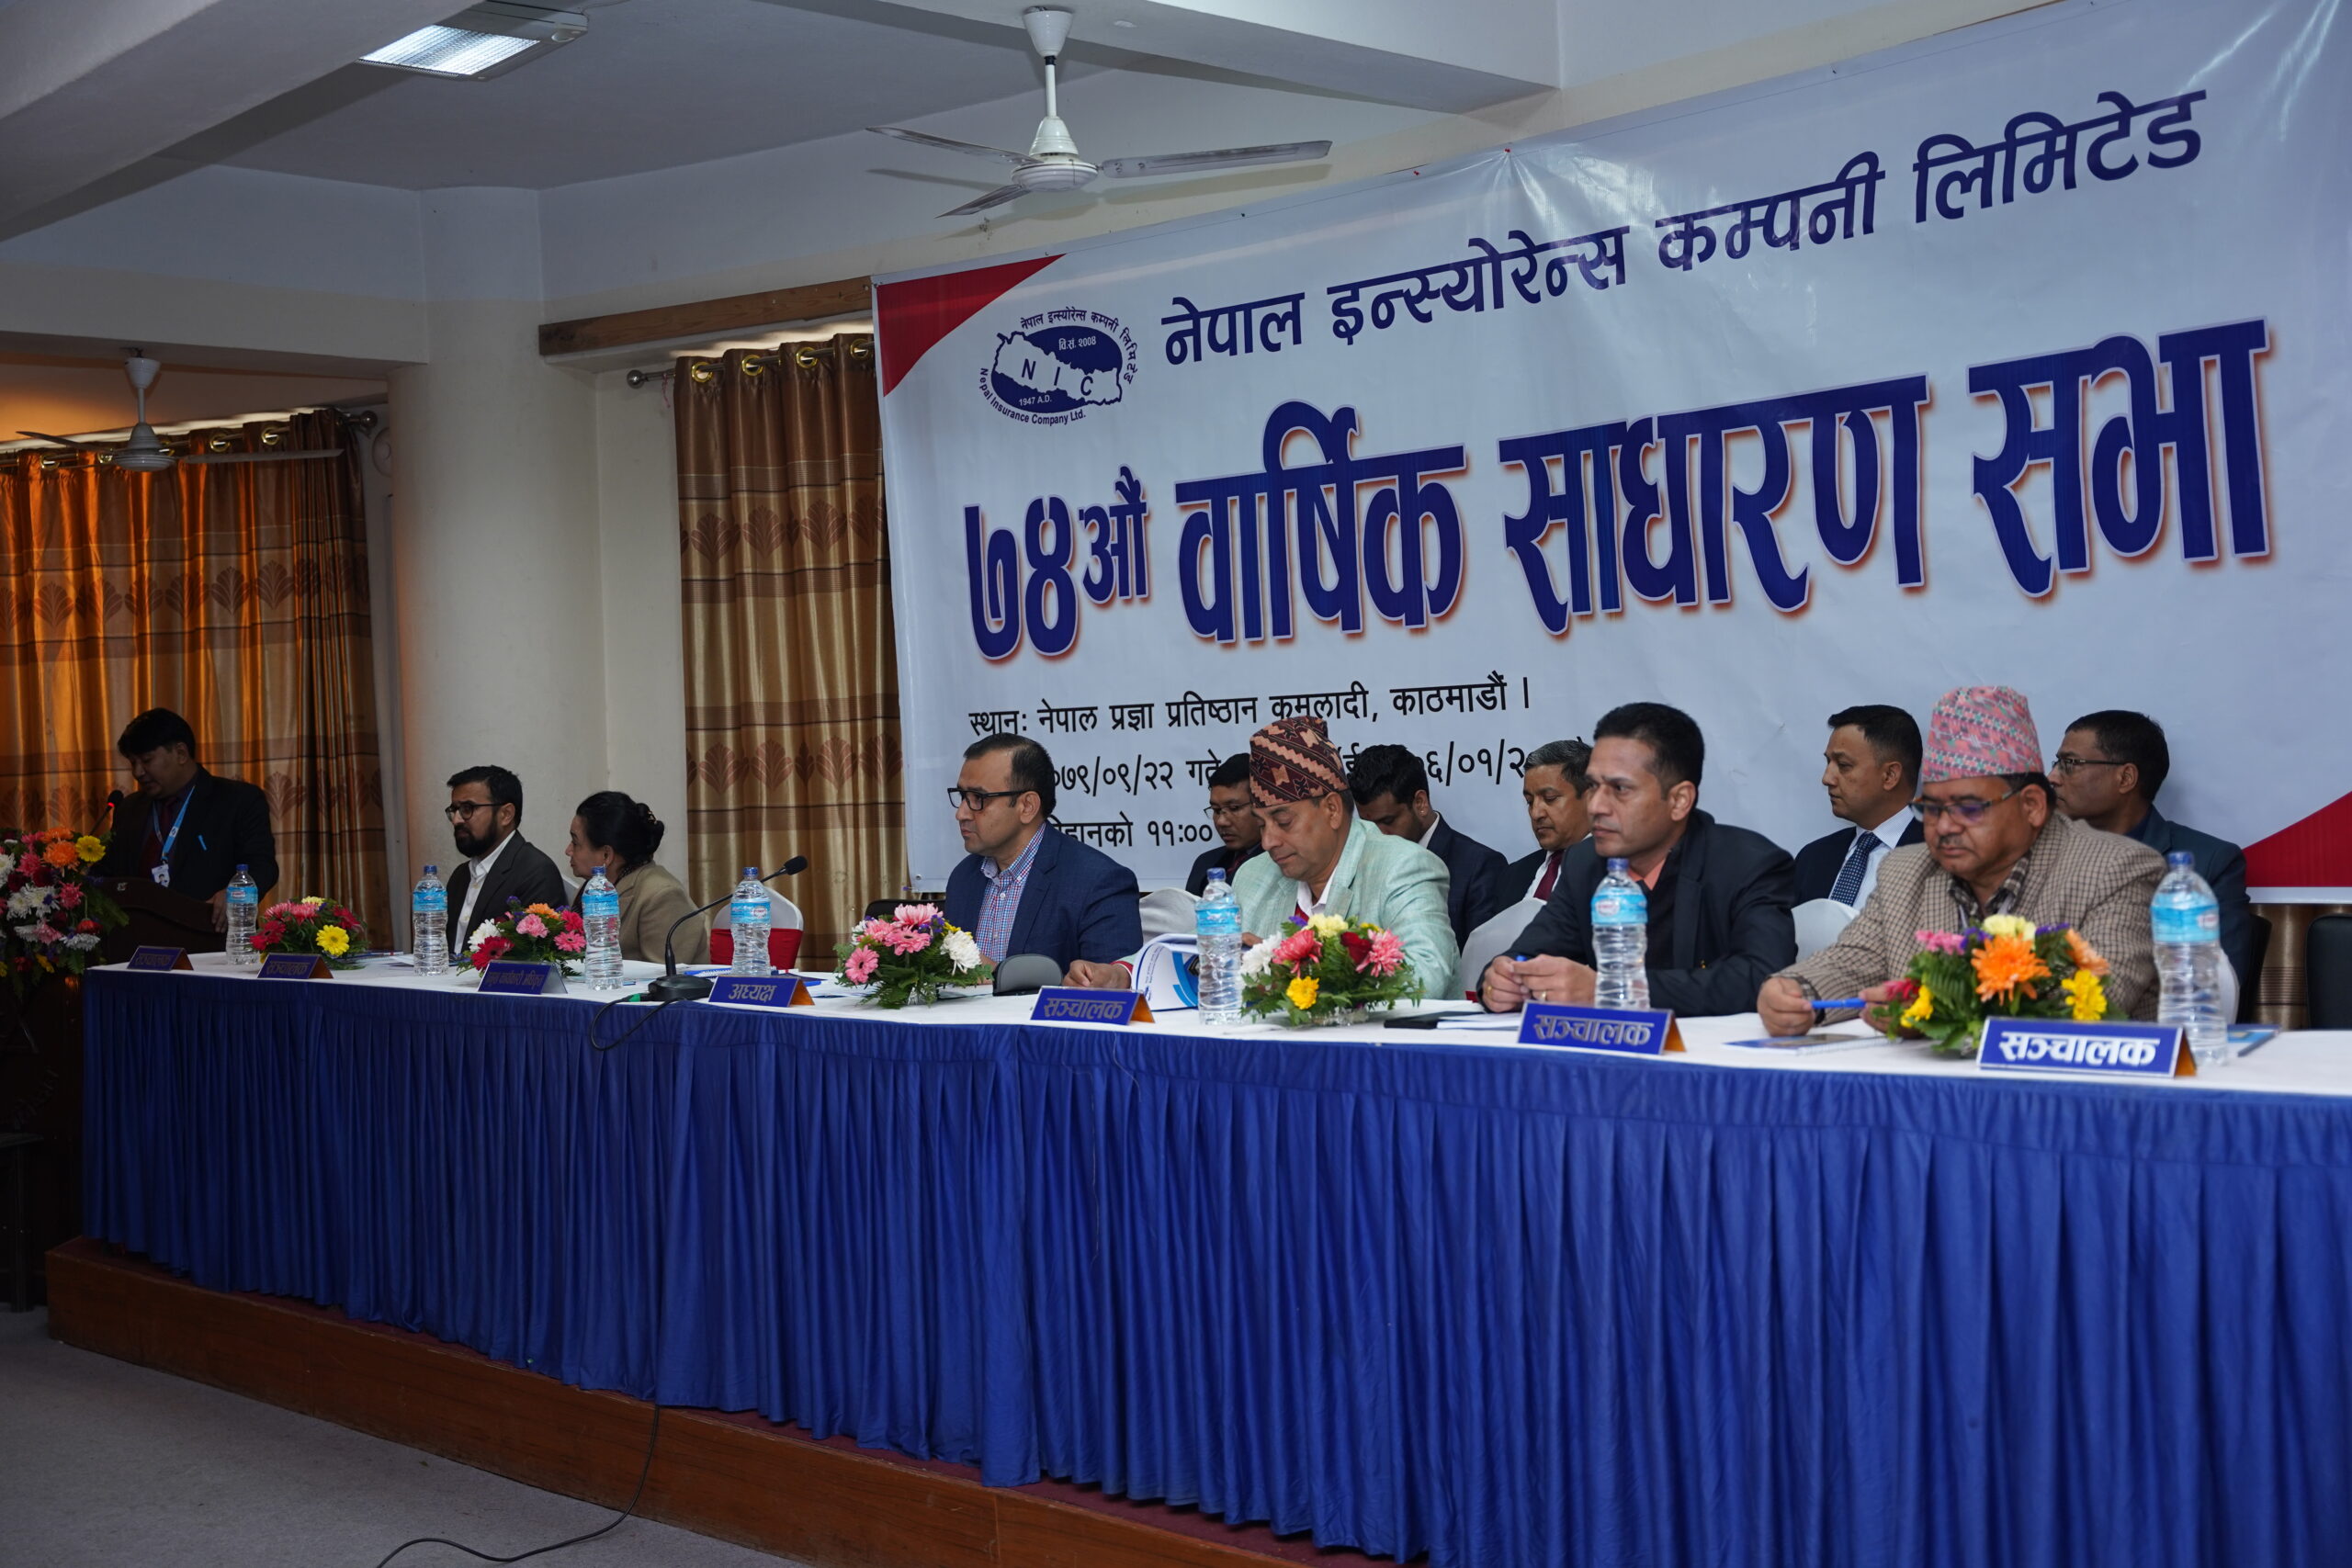 लाभांश पारित सहित नेपाल इन्स्योरेन्सको साधारण सभा सम्पन्न, आफ्नै भवनमा कार्यालय संचालन गर्दै